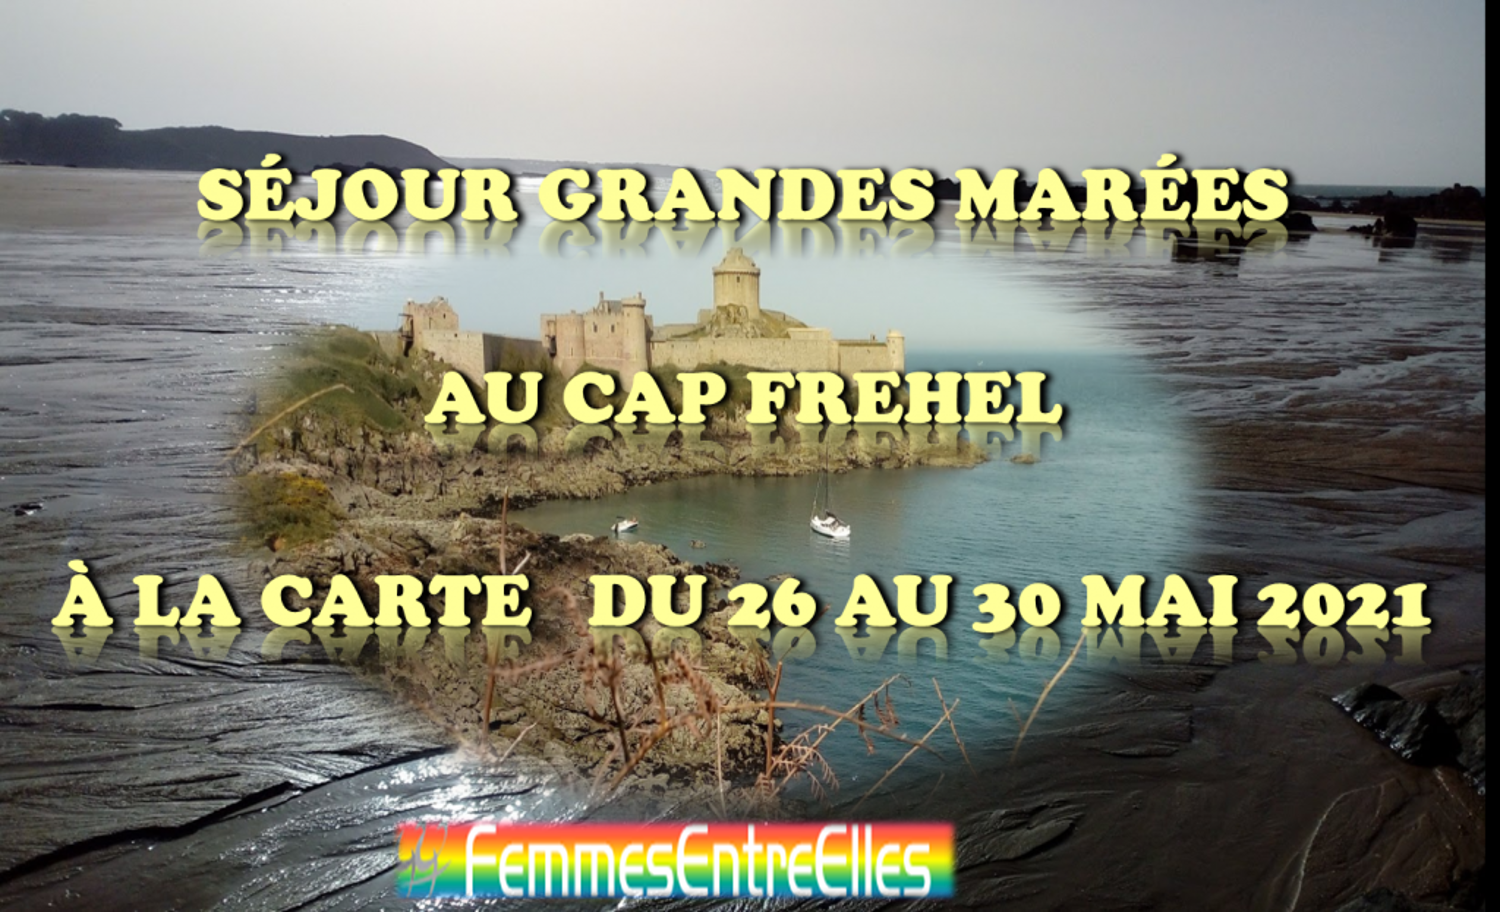 Séjour grandes marées au cap Fréhel 26-30 Mai 2021